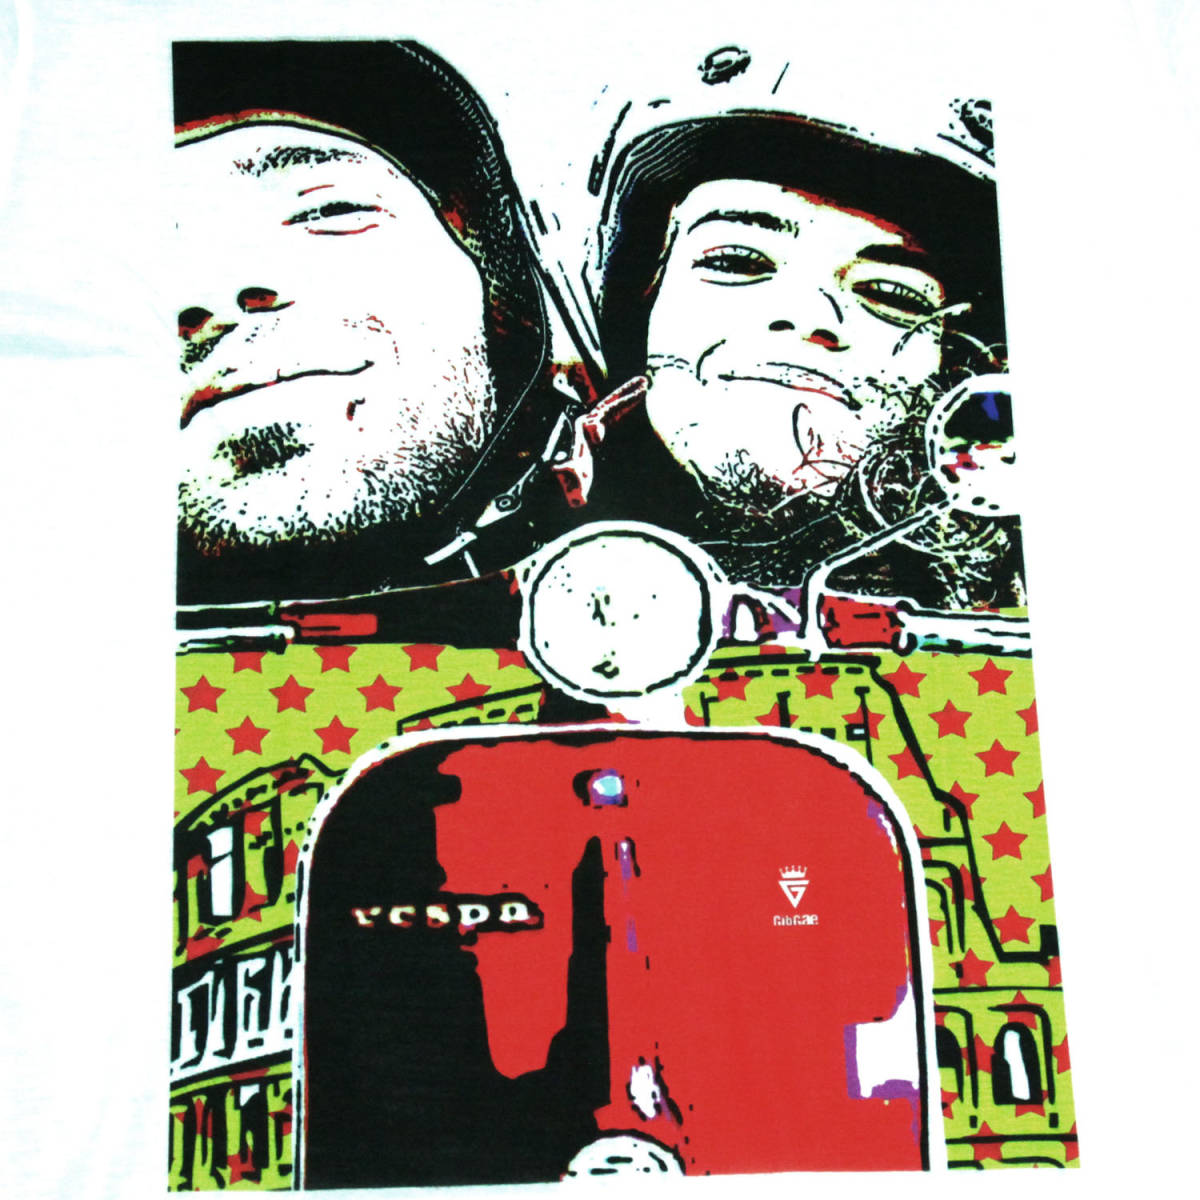  ベスパ イタリア バイク カラフル 人気 ストリート系 デザインTシャツ おもしろTシャツ メンズ 半袖★M623L_画像3